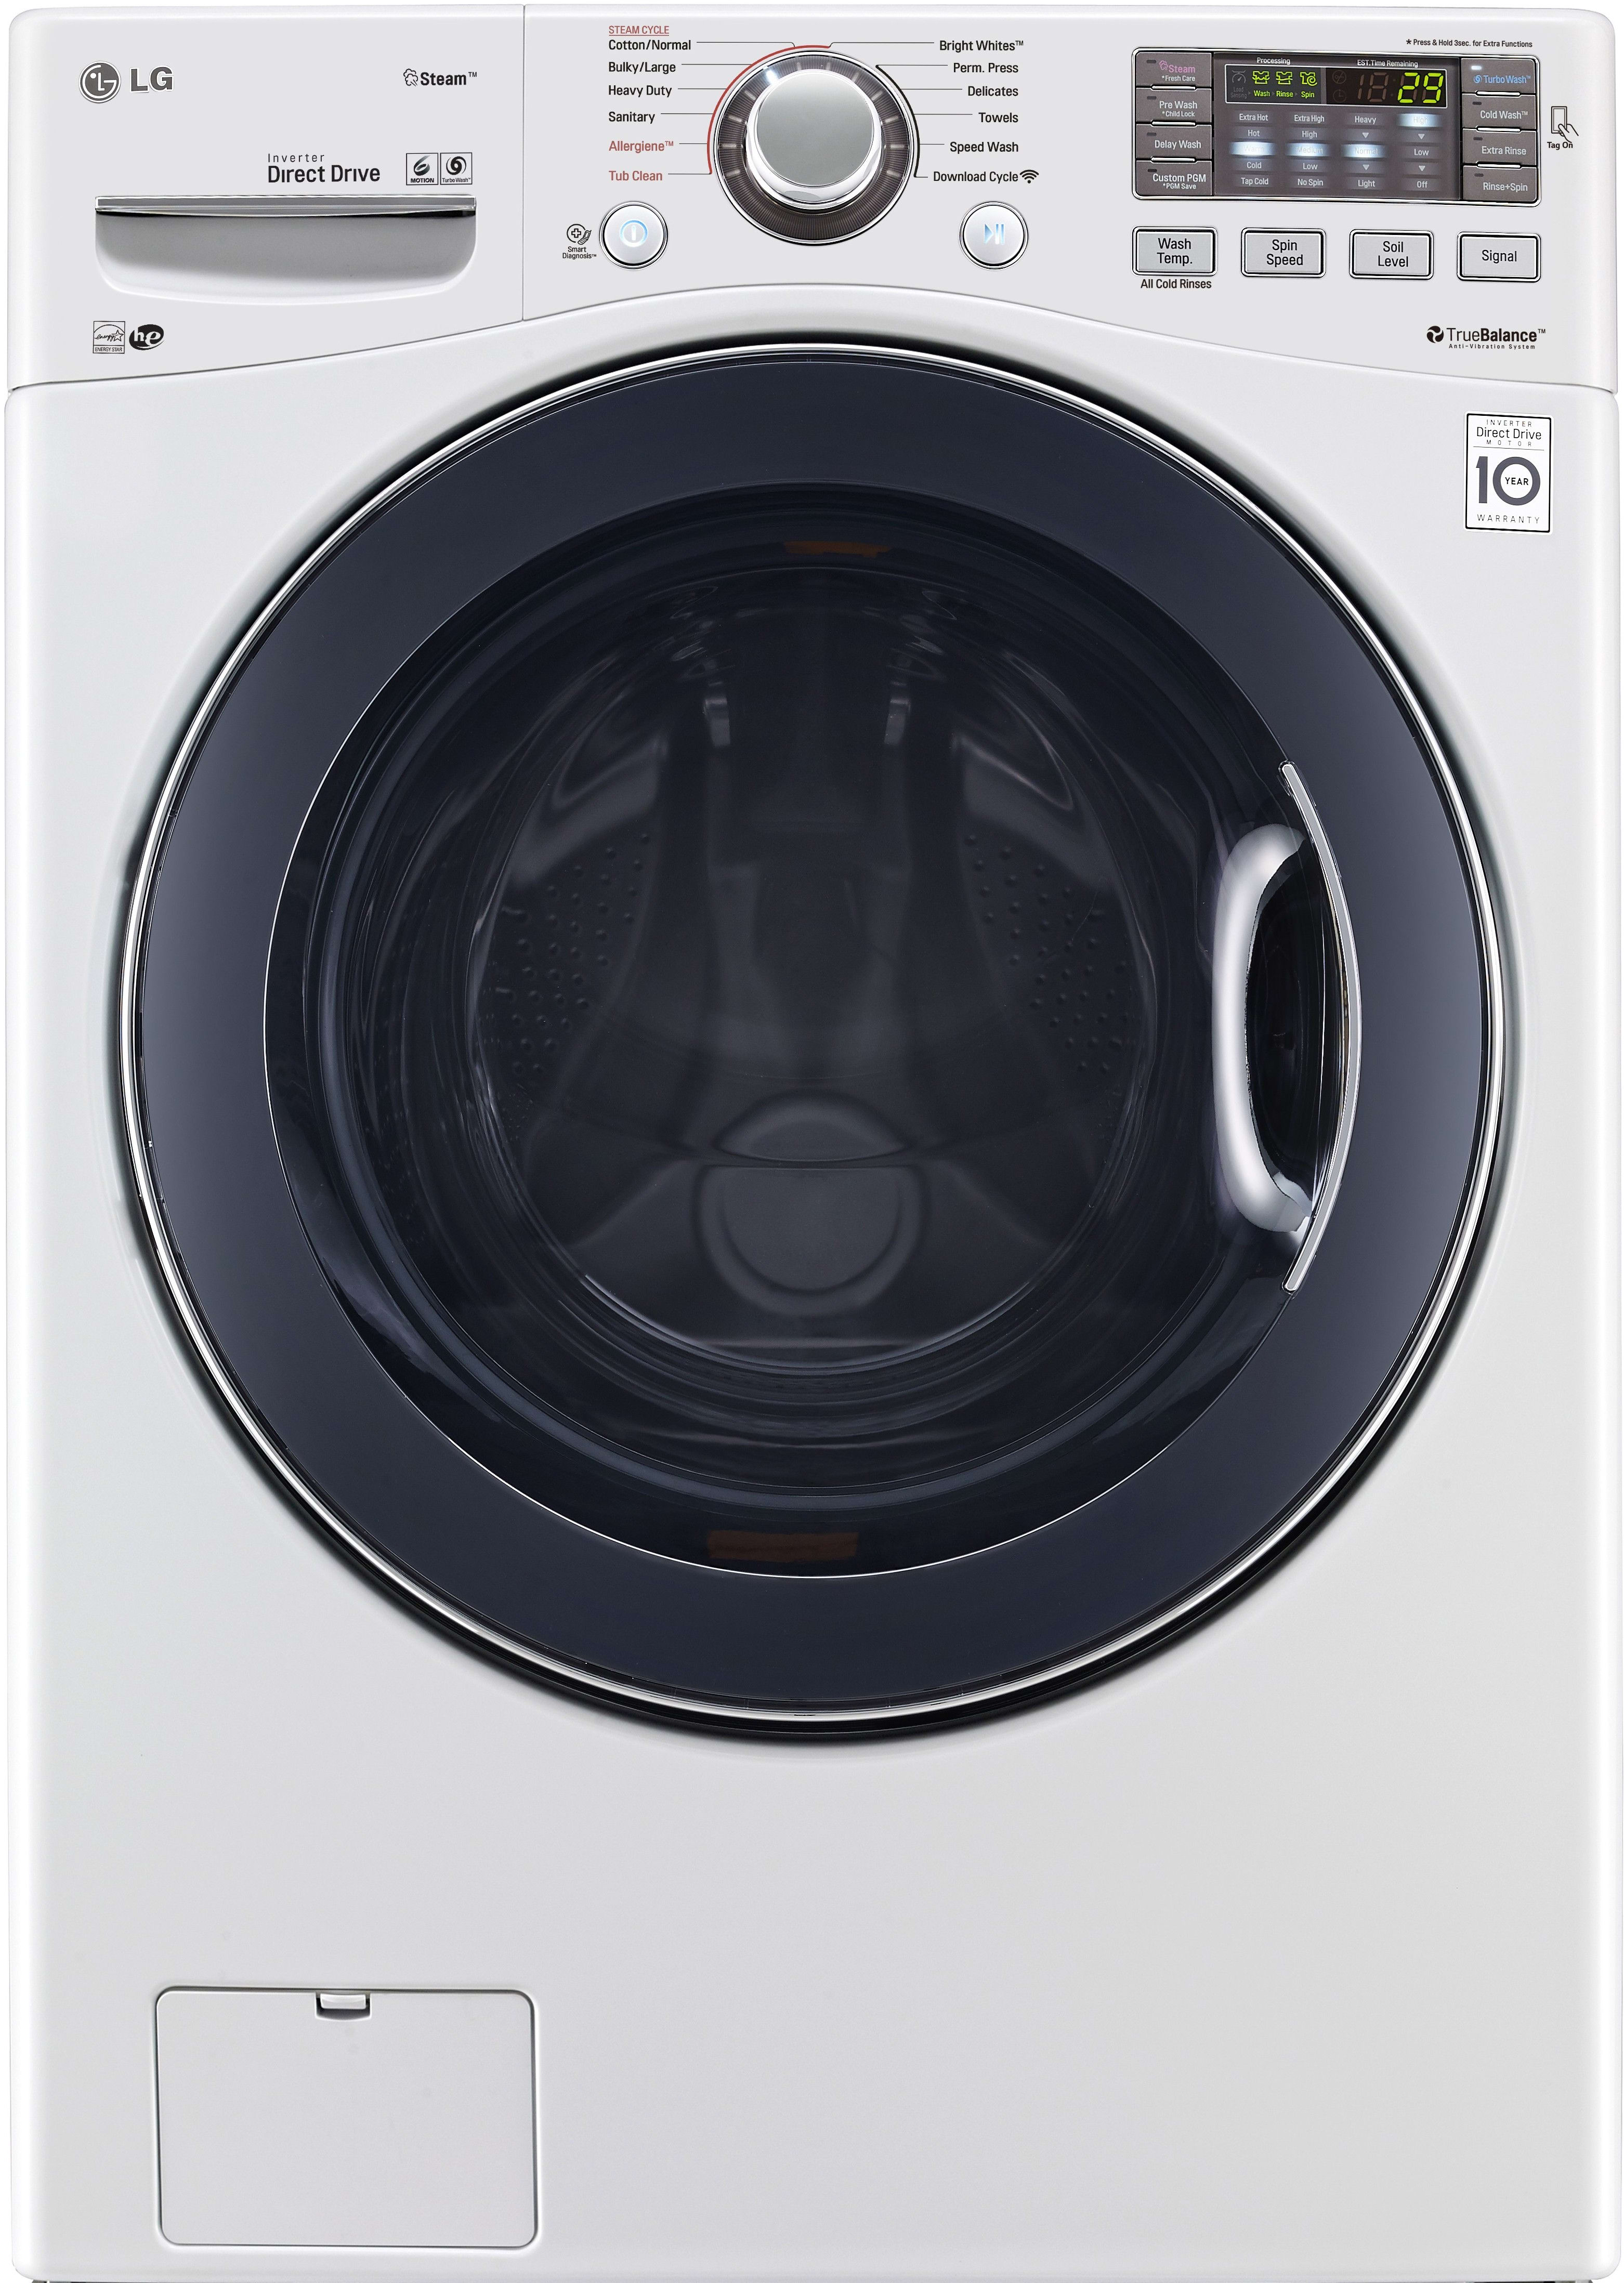 Samsung Print Top Loader Washer Rebate Form